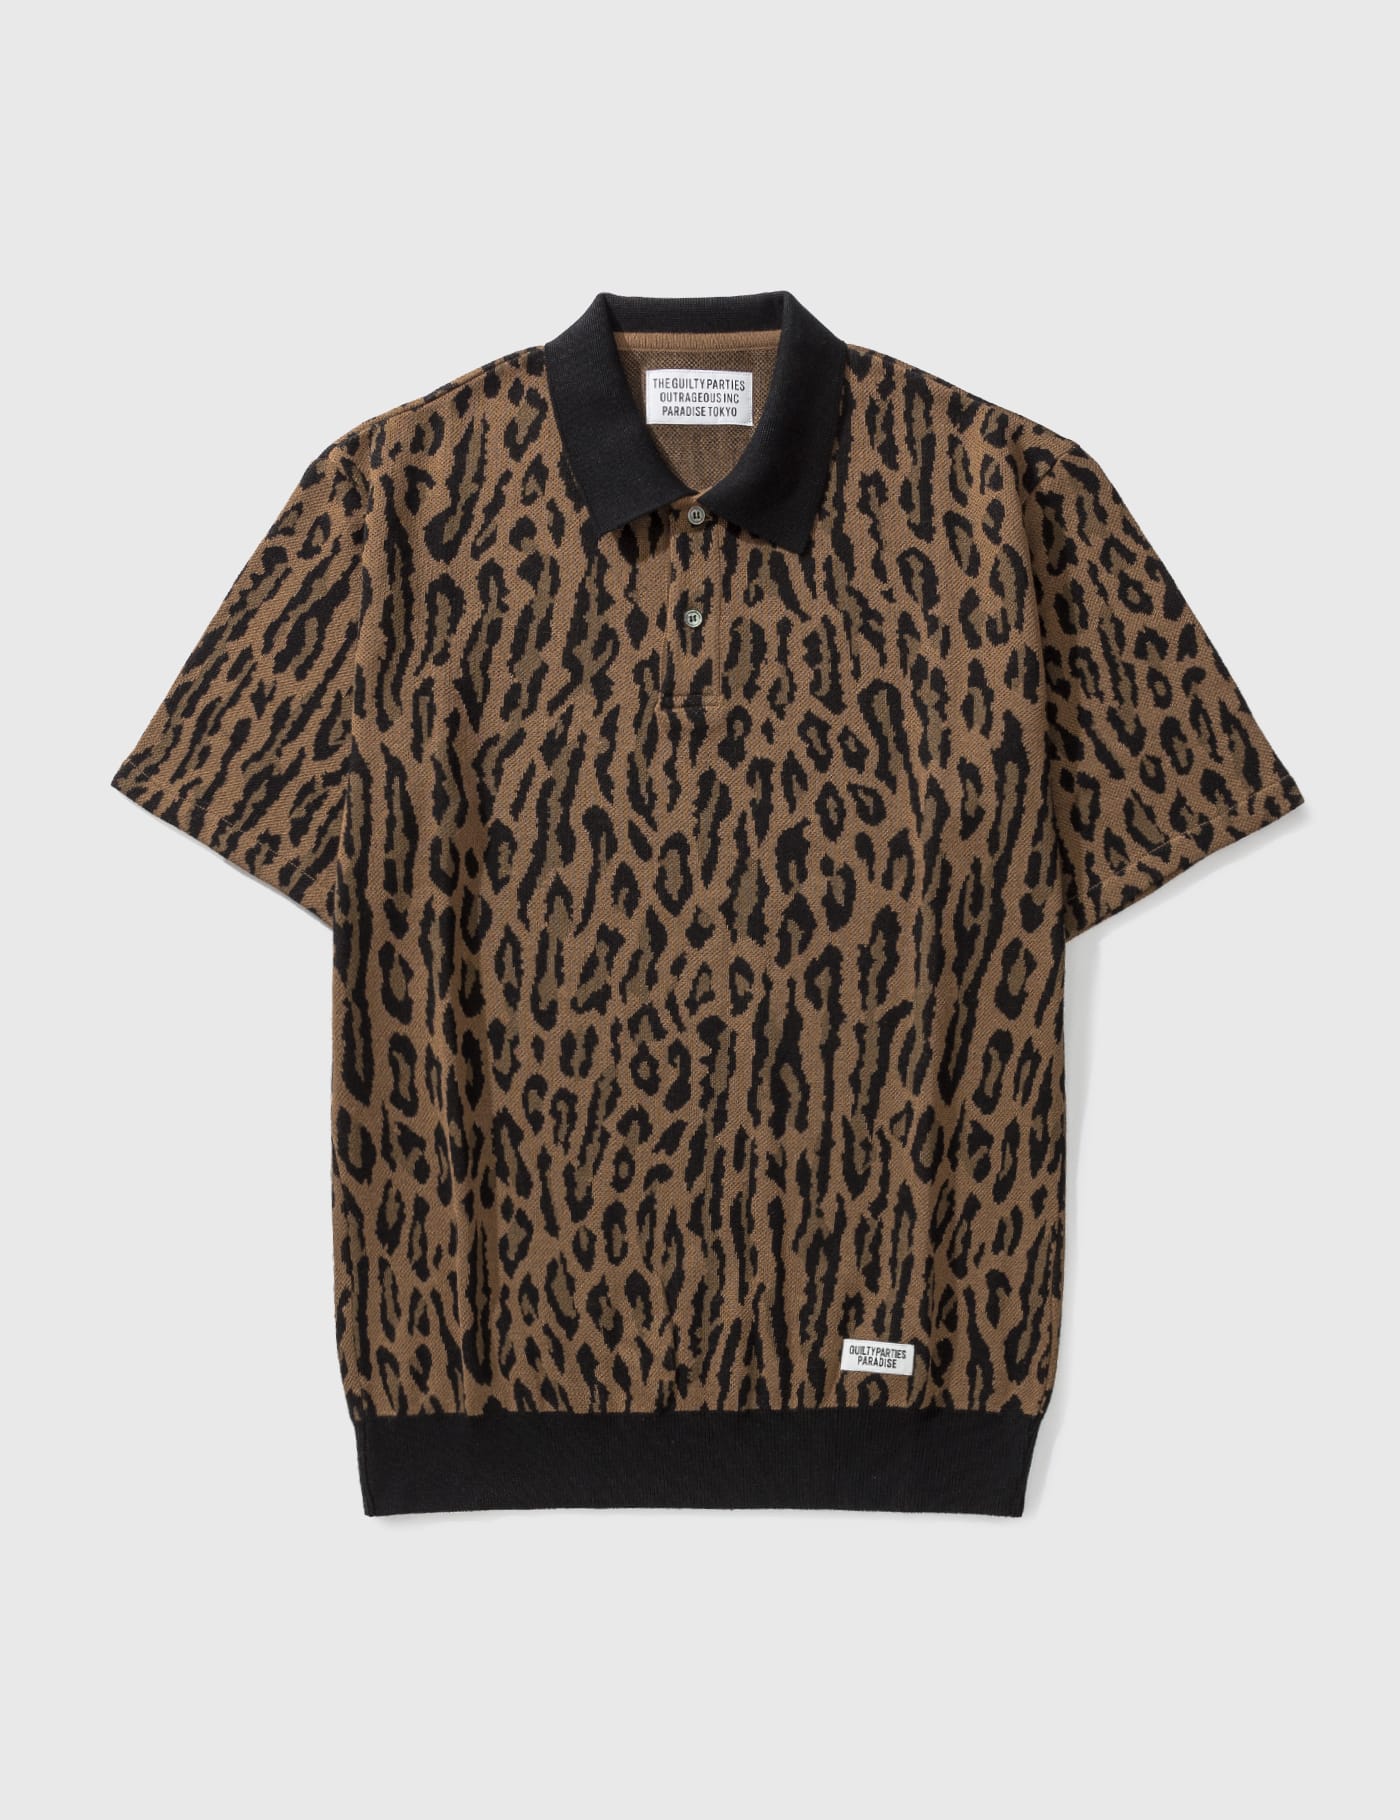 Wacko Maria - Leopard Knit Polo Shirt | HBX - HYPEBEAST 为您搜罗